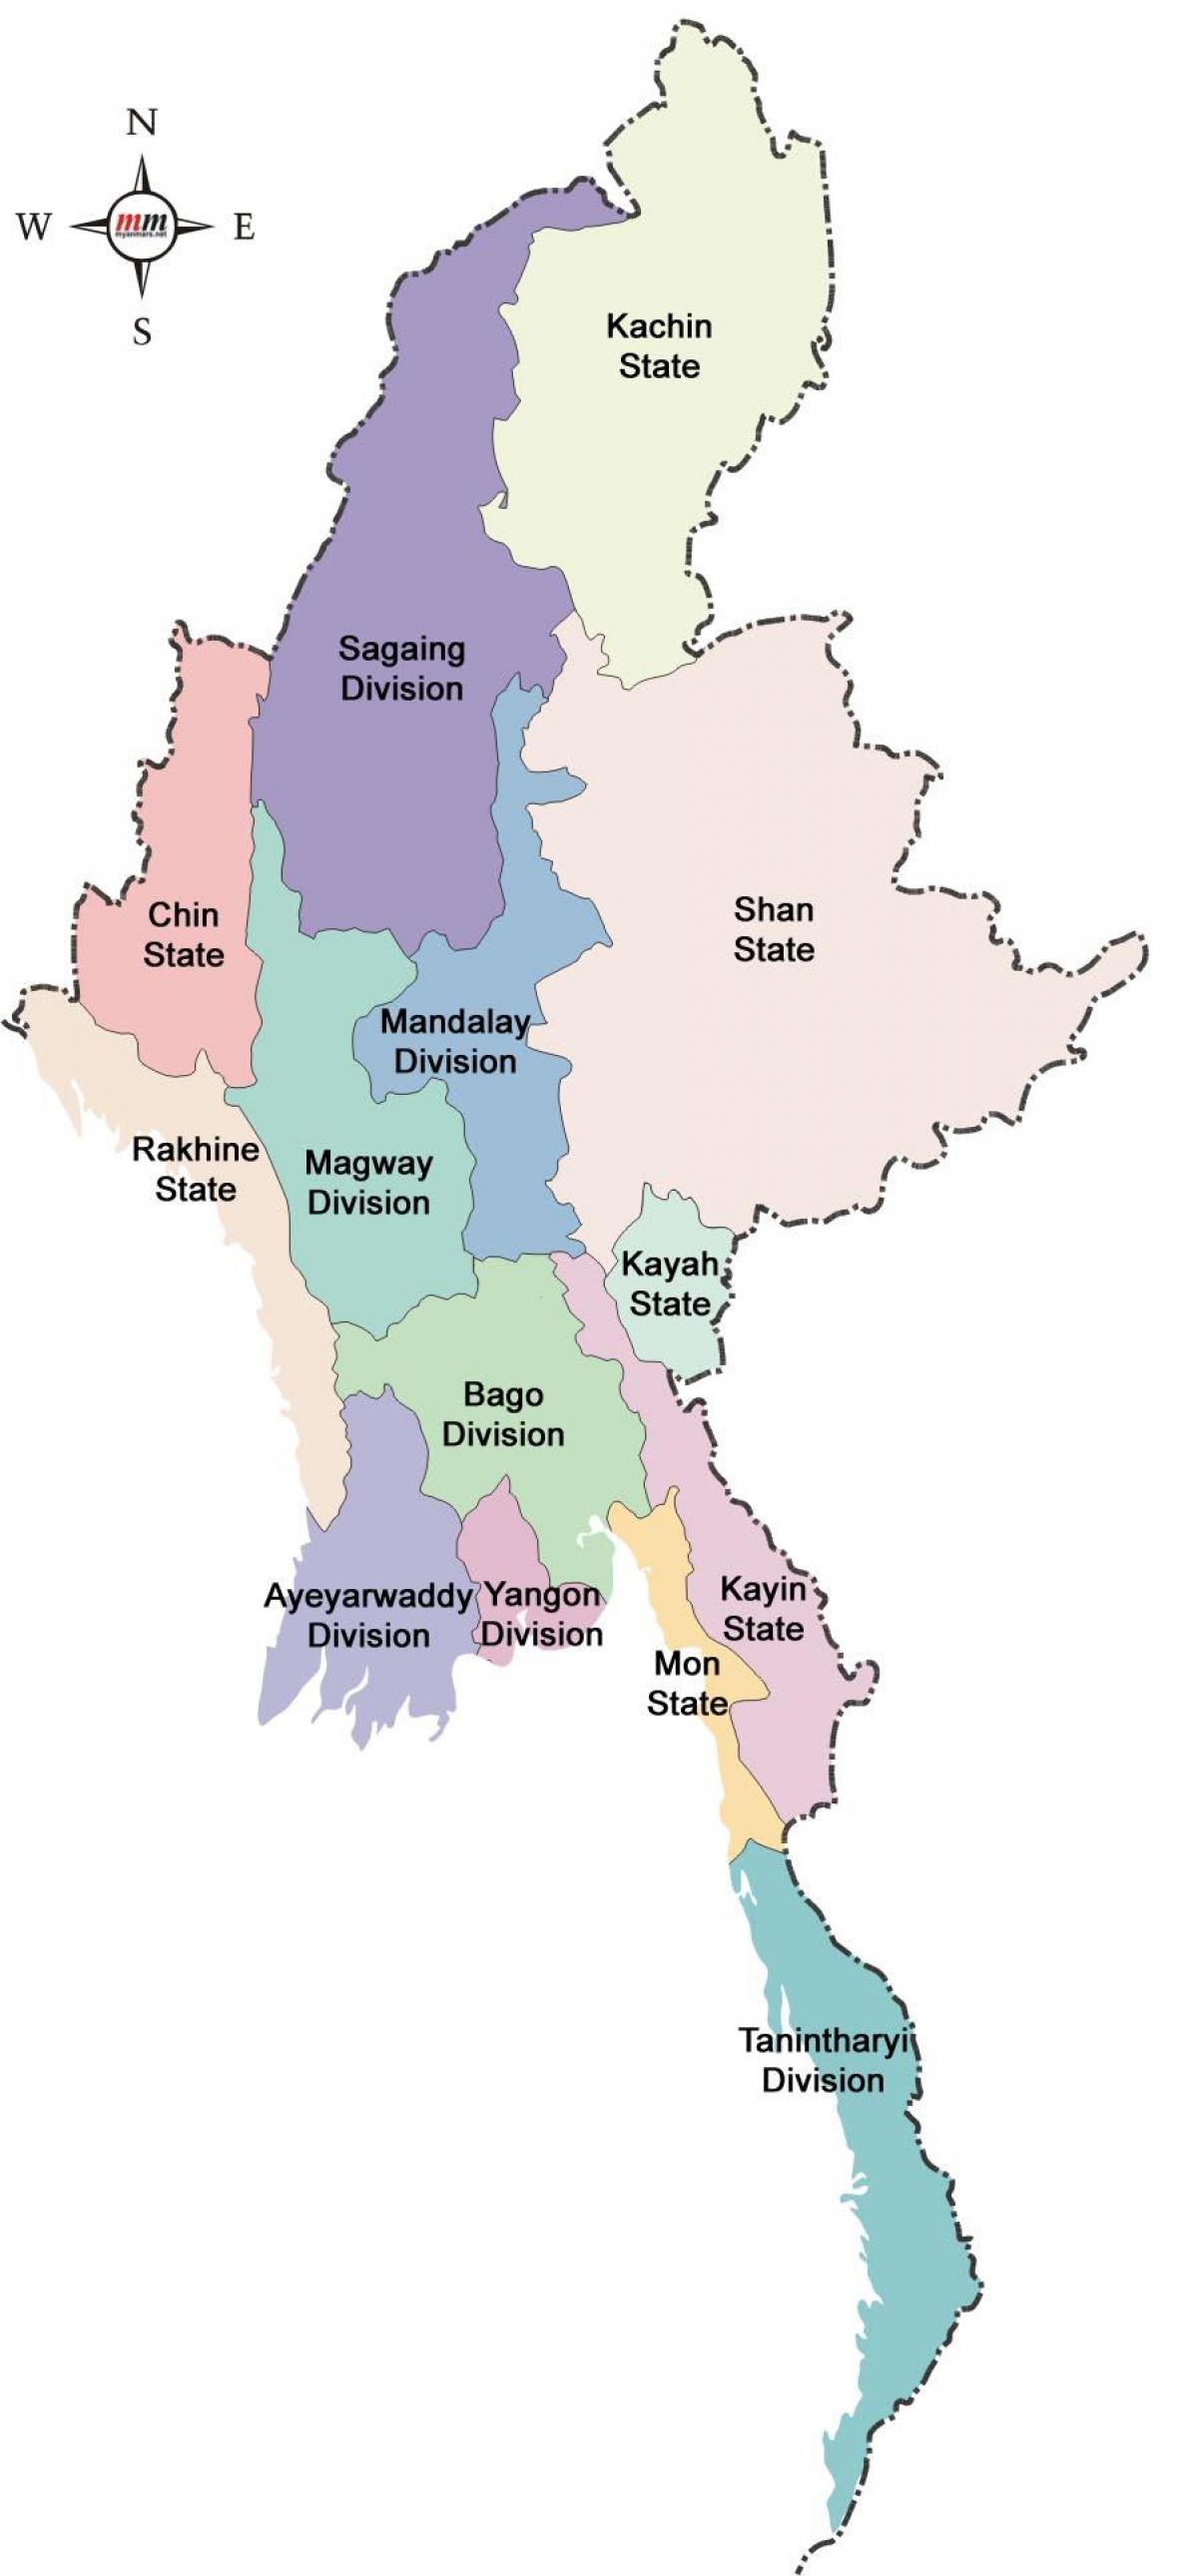 میانمار نقشه و ایالات متحده